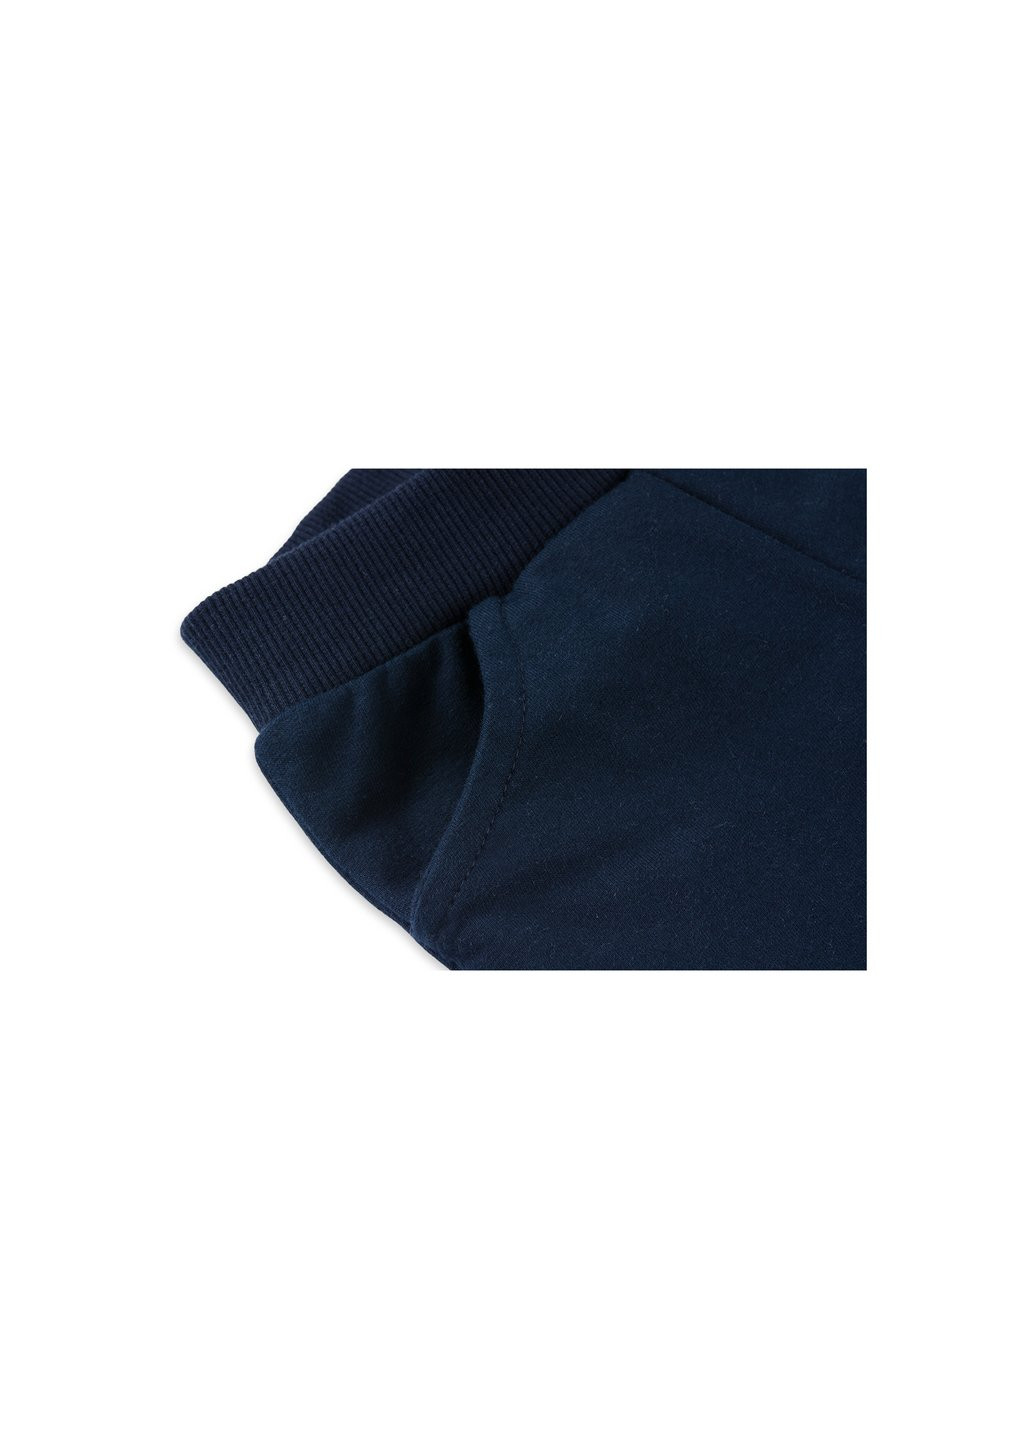 Серый демисезонный набор детской одежды с тигриком (7214-92/b-gray) Breeze